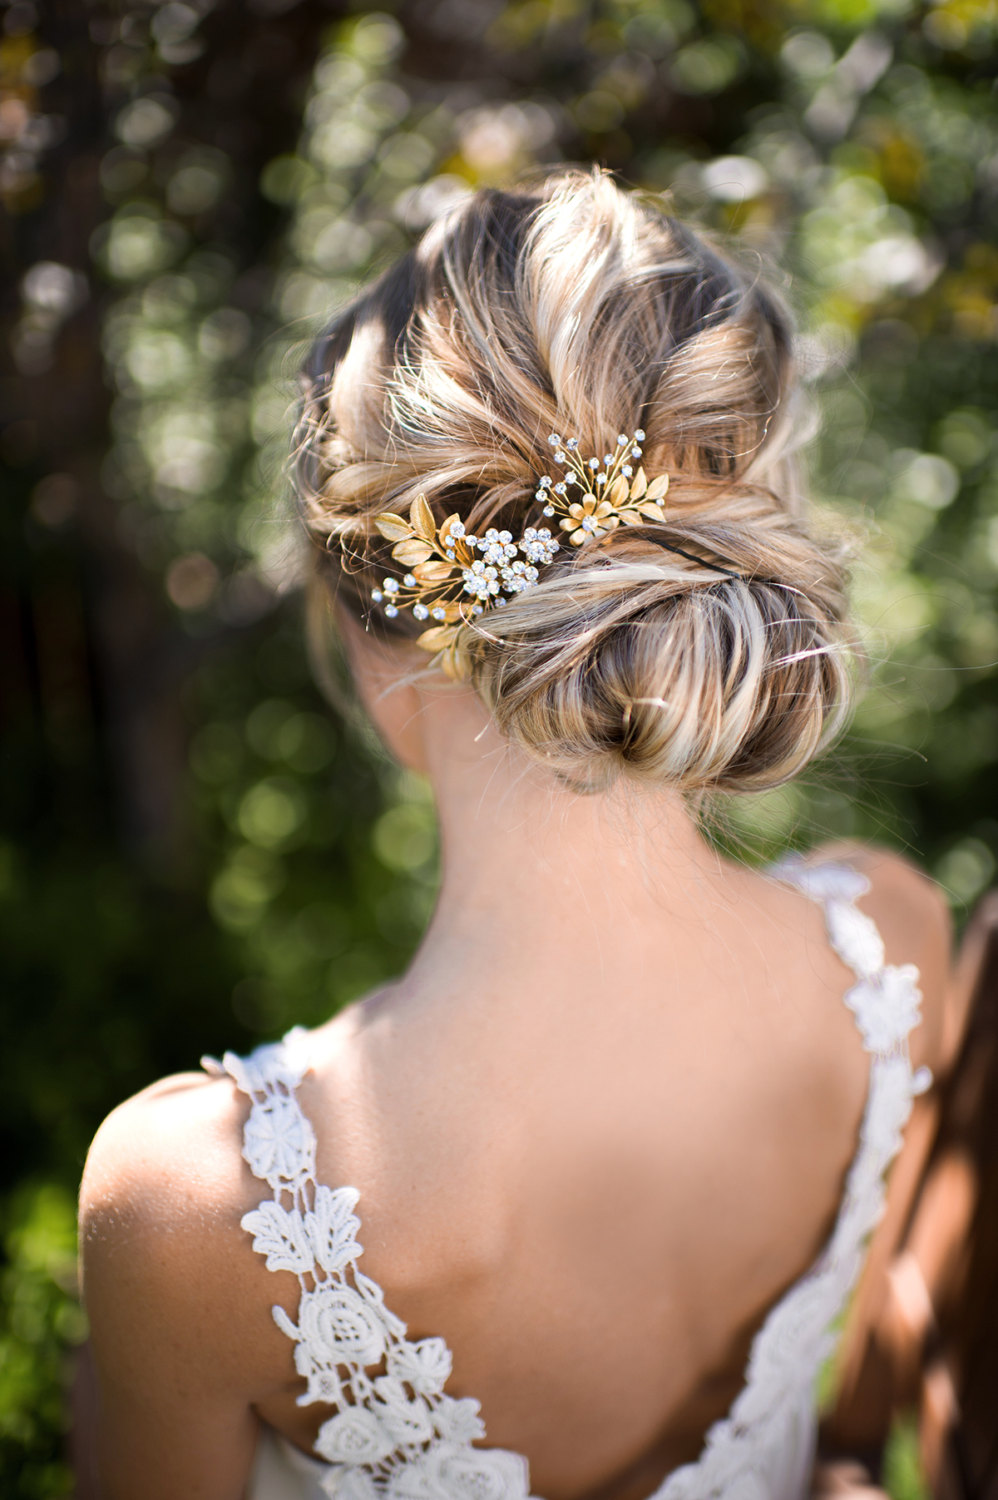 gold leaf hair accessory for weddings | lottie-da designs | https://emmalinebride.com/bride/gold-leaf-hair-accessory/